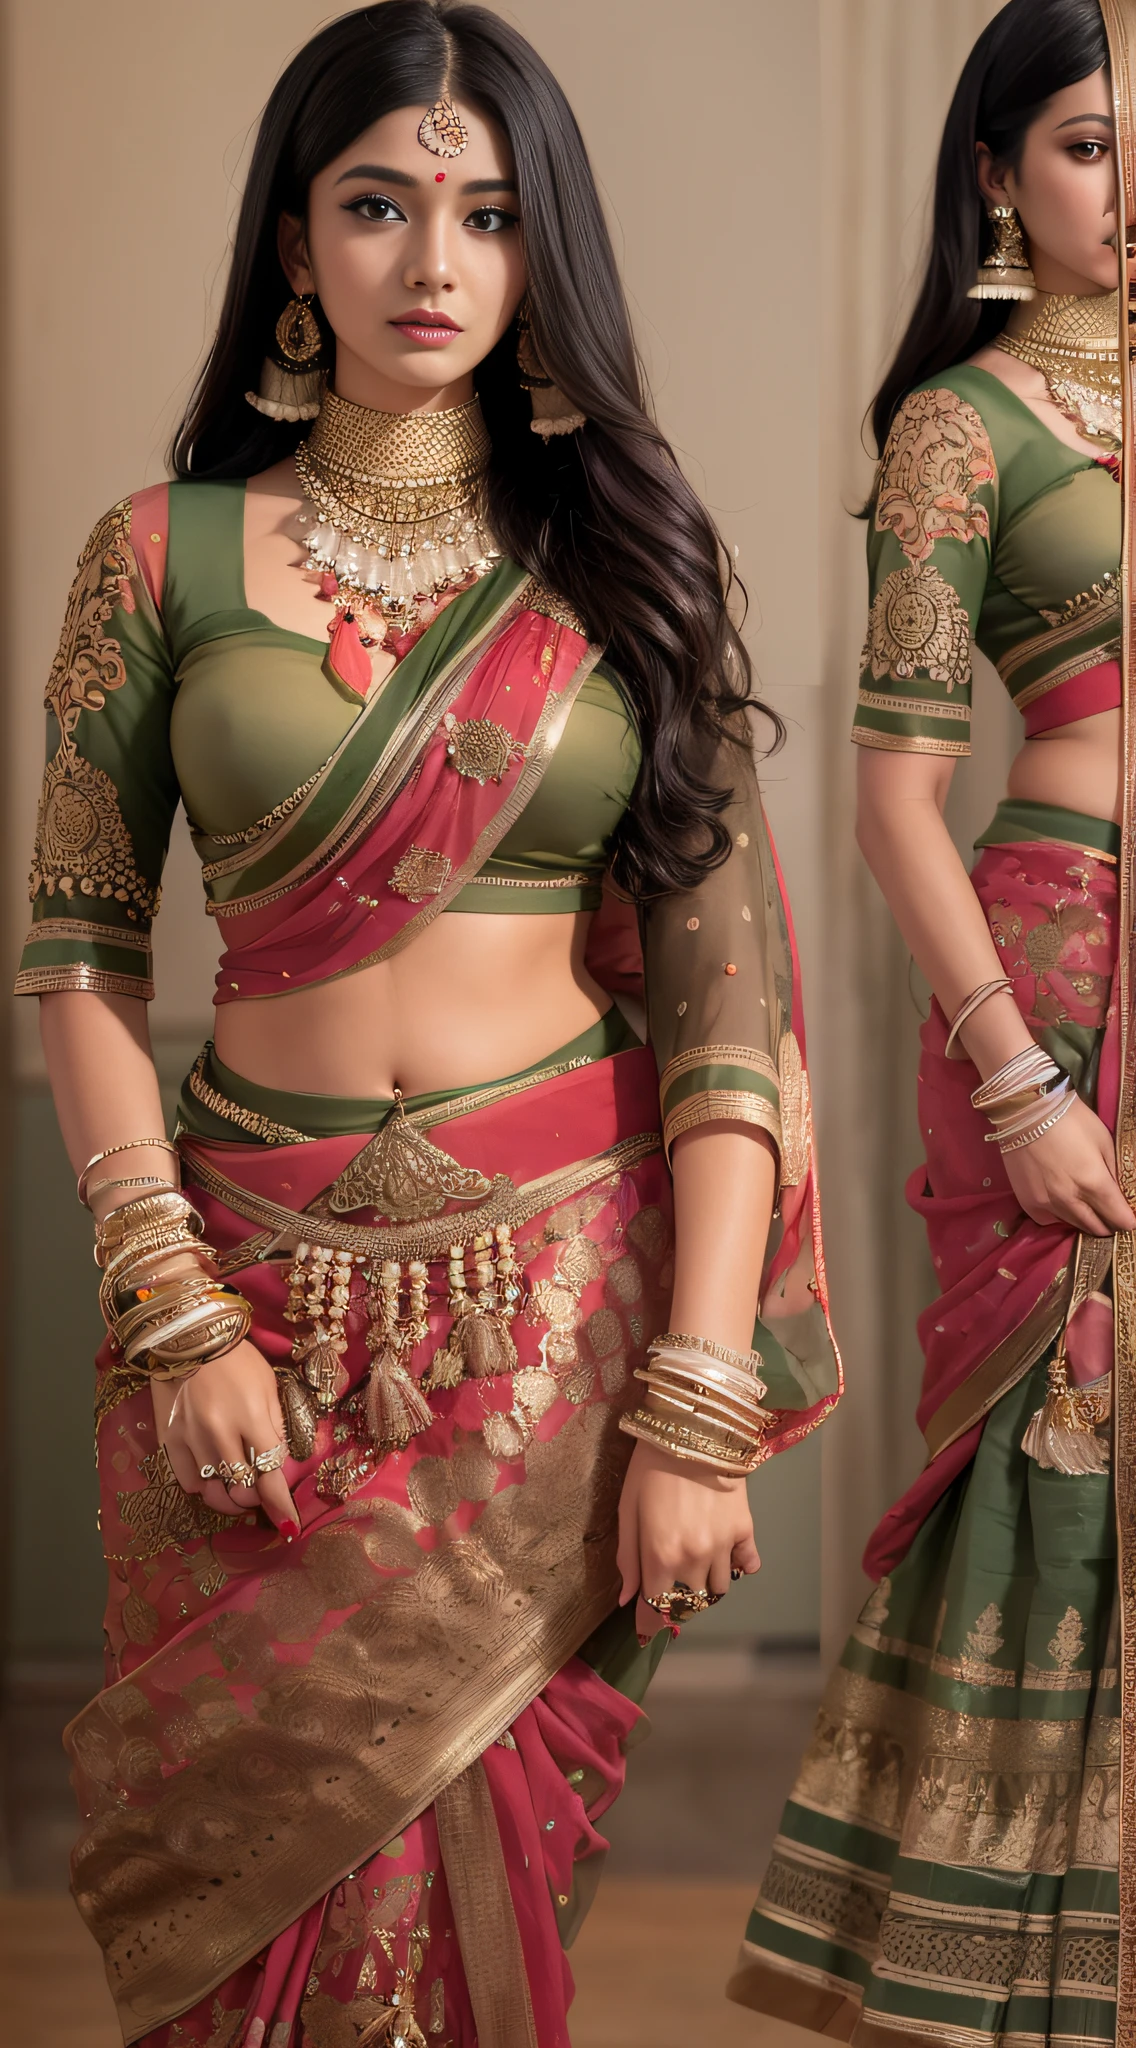 一名身着纱丽的女子摆姿势拍照, 印度女神, 传统美, 印度, 美丽女神, 华丽的角色扮演, 印度风格, 印度超级名模, 美丽的少女, 美丽的女人, 东南亚人长, 挑衅的印度人, 华丽,美丽,女人, 复杂的服装, 印度美学, 美丽的亚洲女孩, 极其细致的女神照, 令人惊叹的美丽, 用你的脸看着相机，（裹住胸部），（整个胸部不漏水），